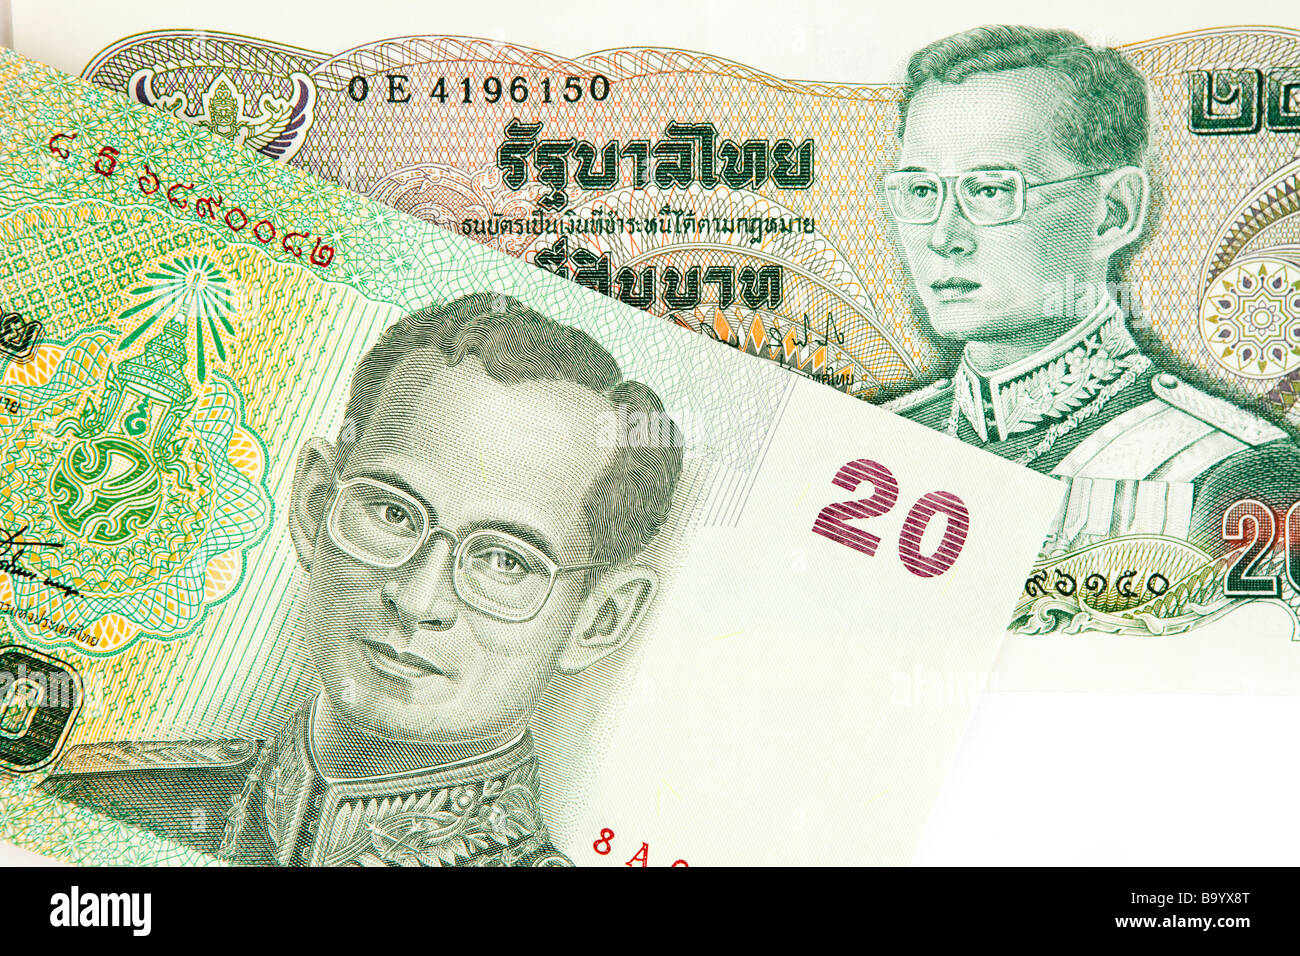 Valuta tailandese immagini e fotografie stock ad alta risoluzione - Alamy